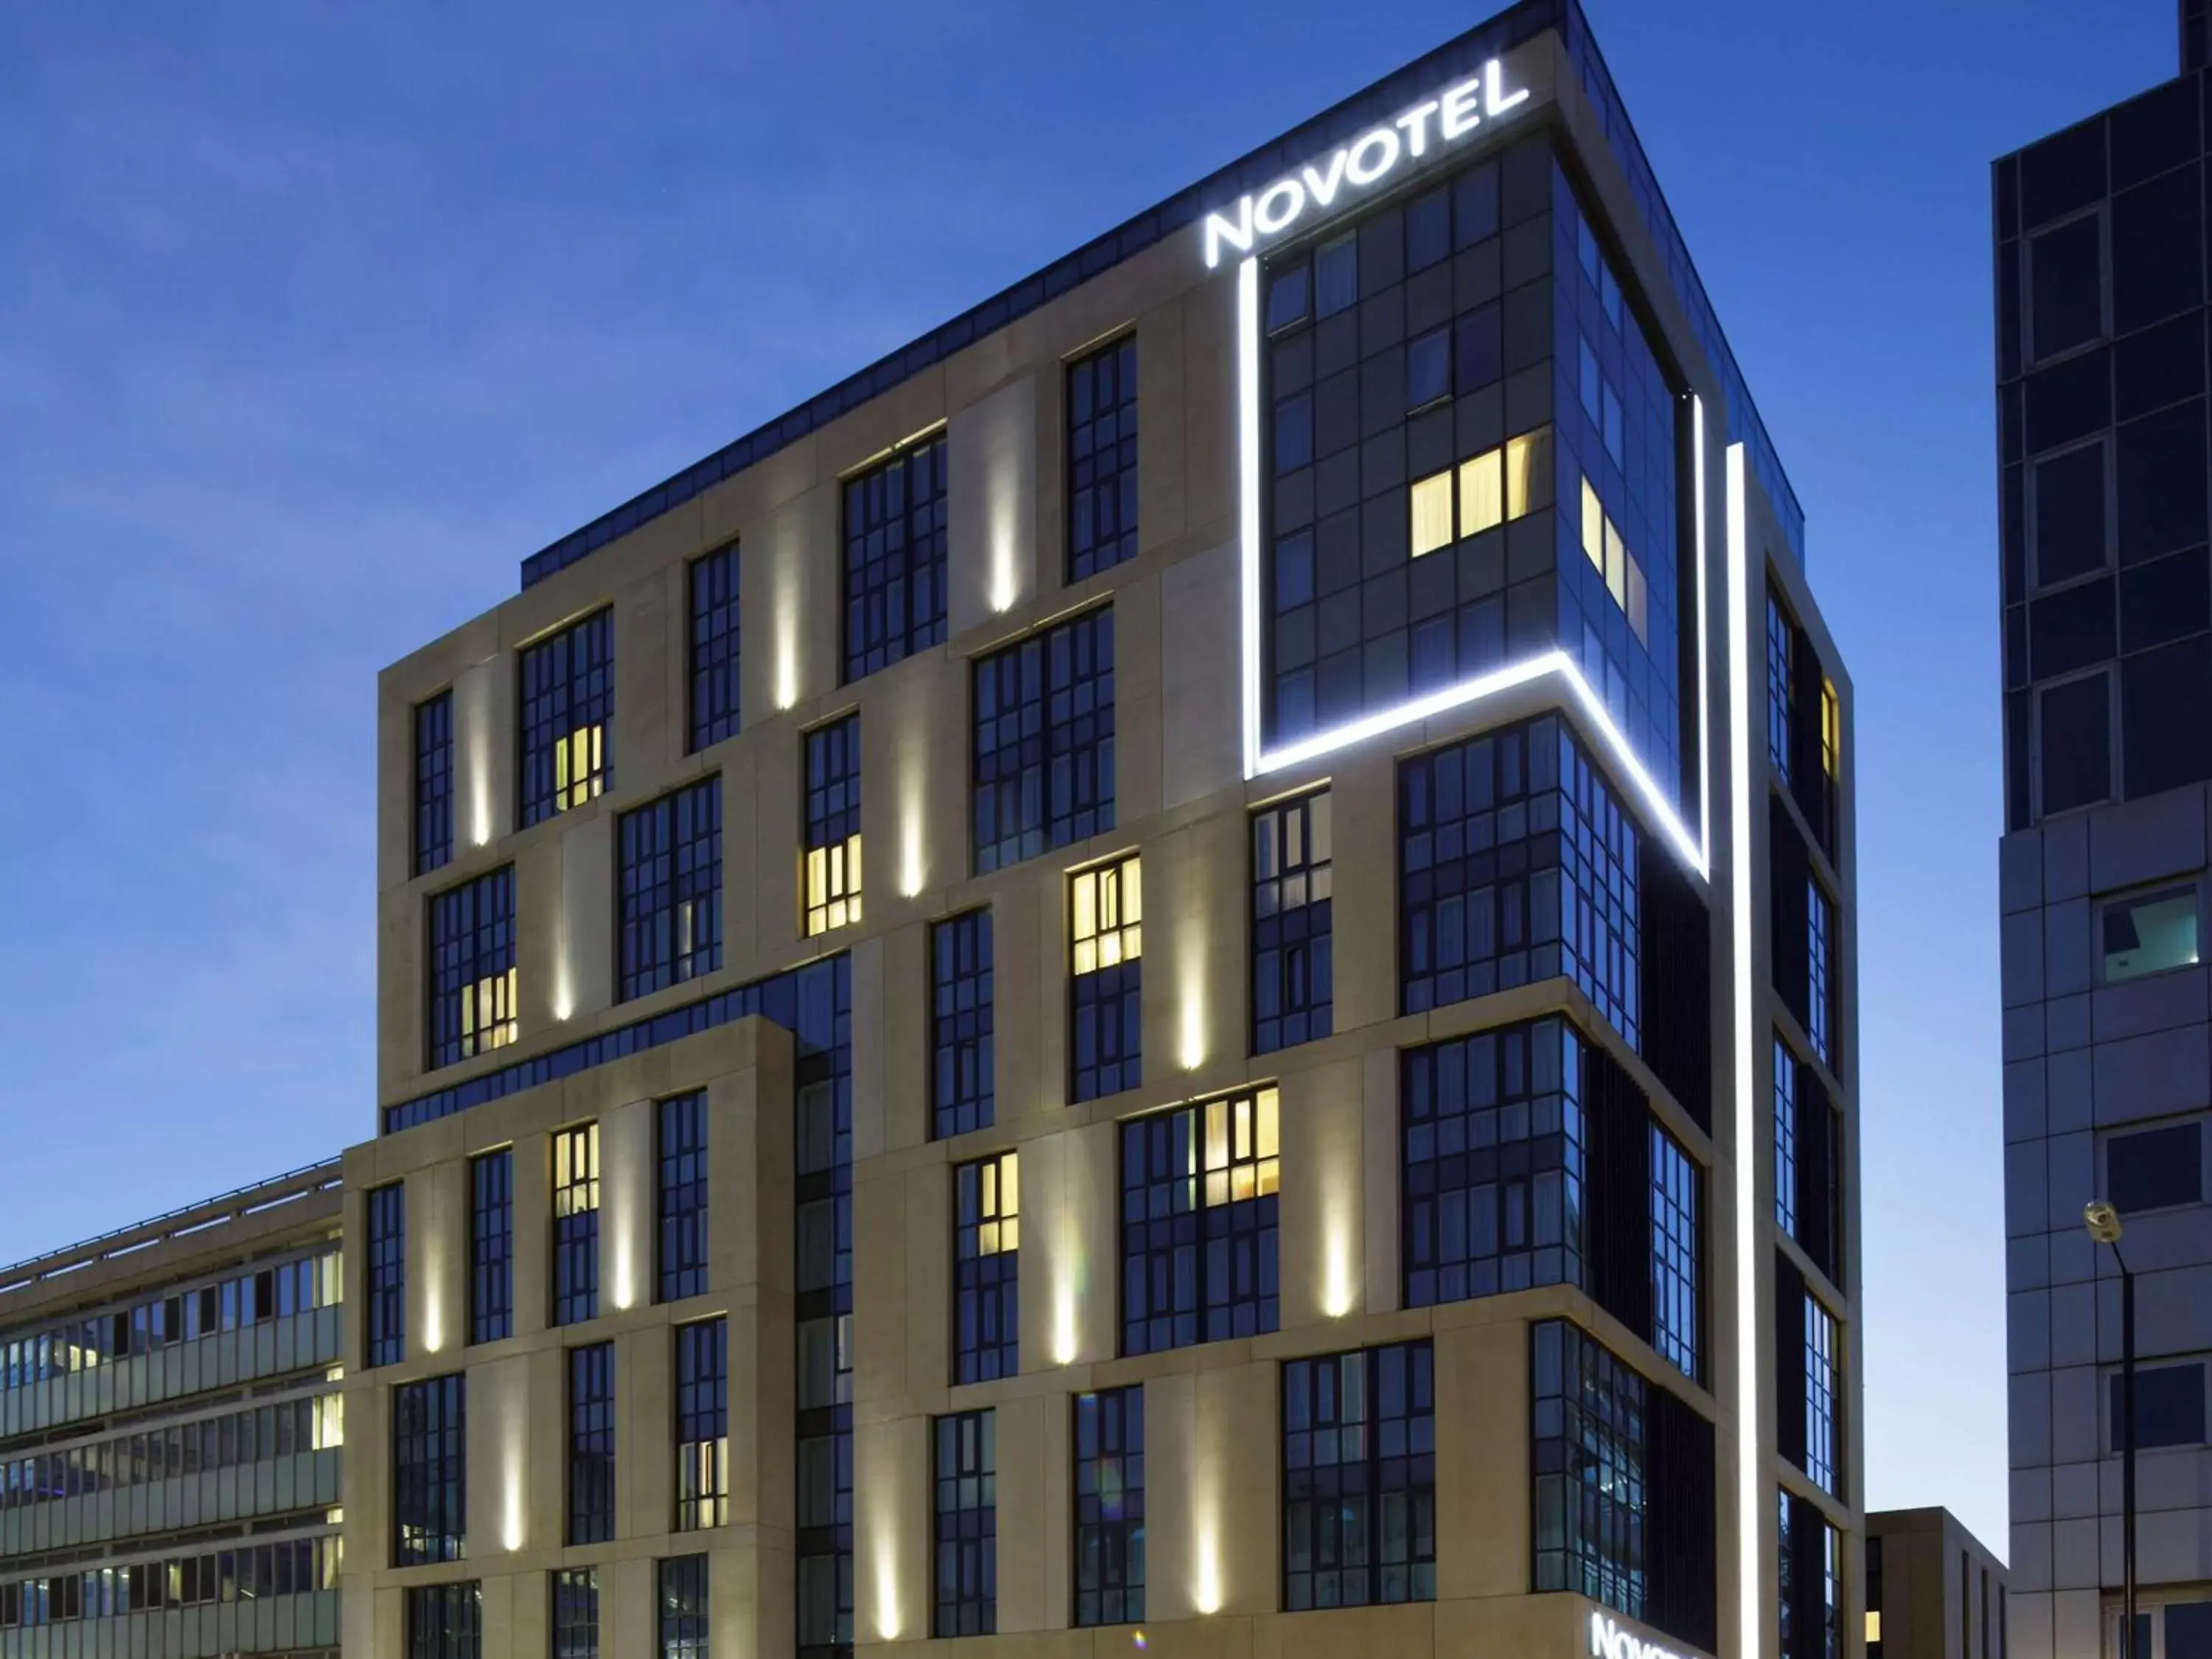 Property Building in Novotel London Blackfriars